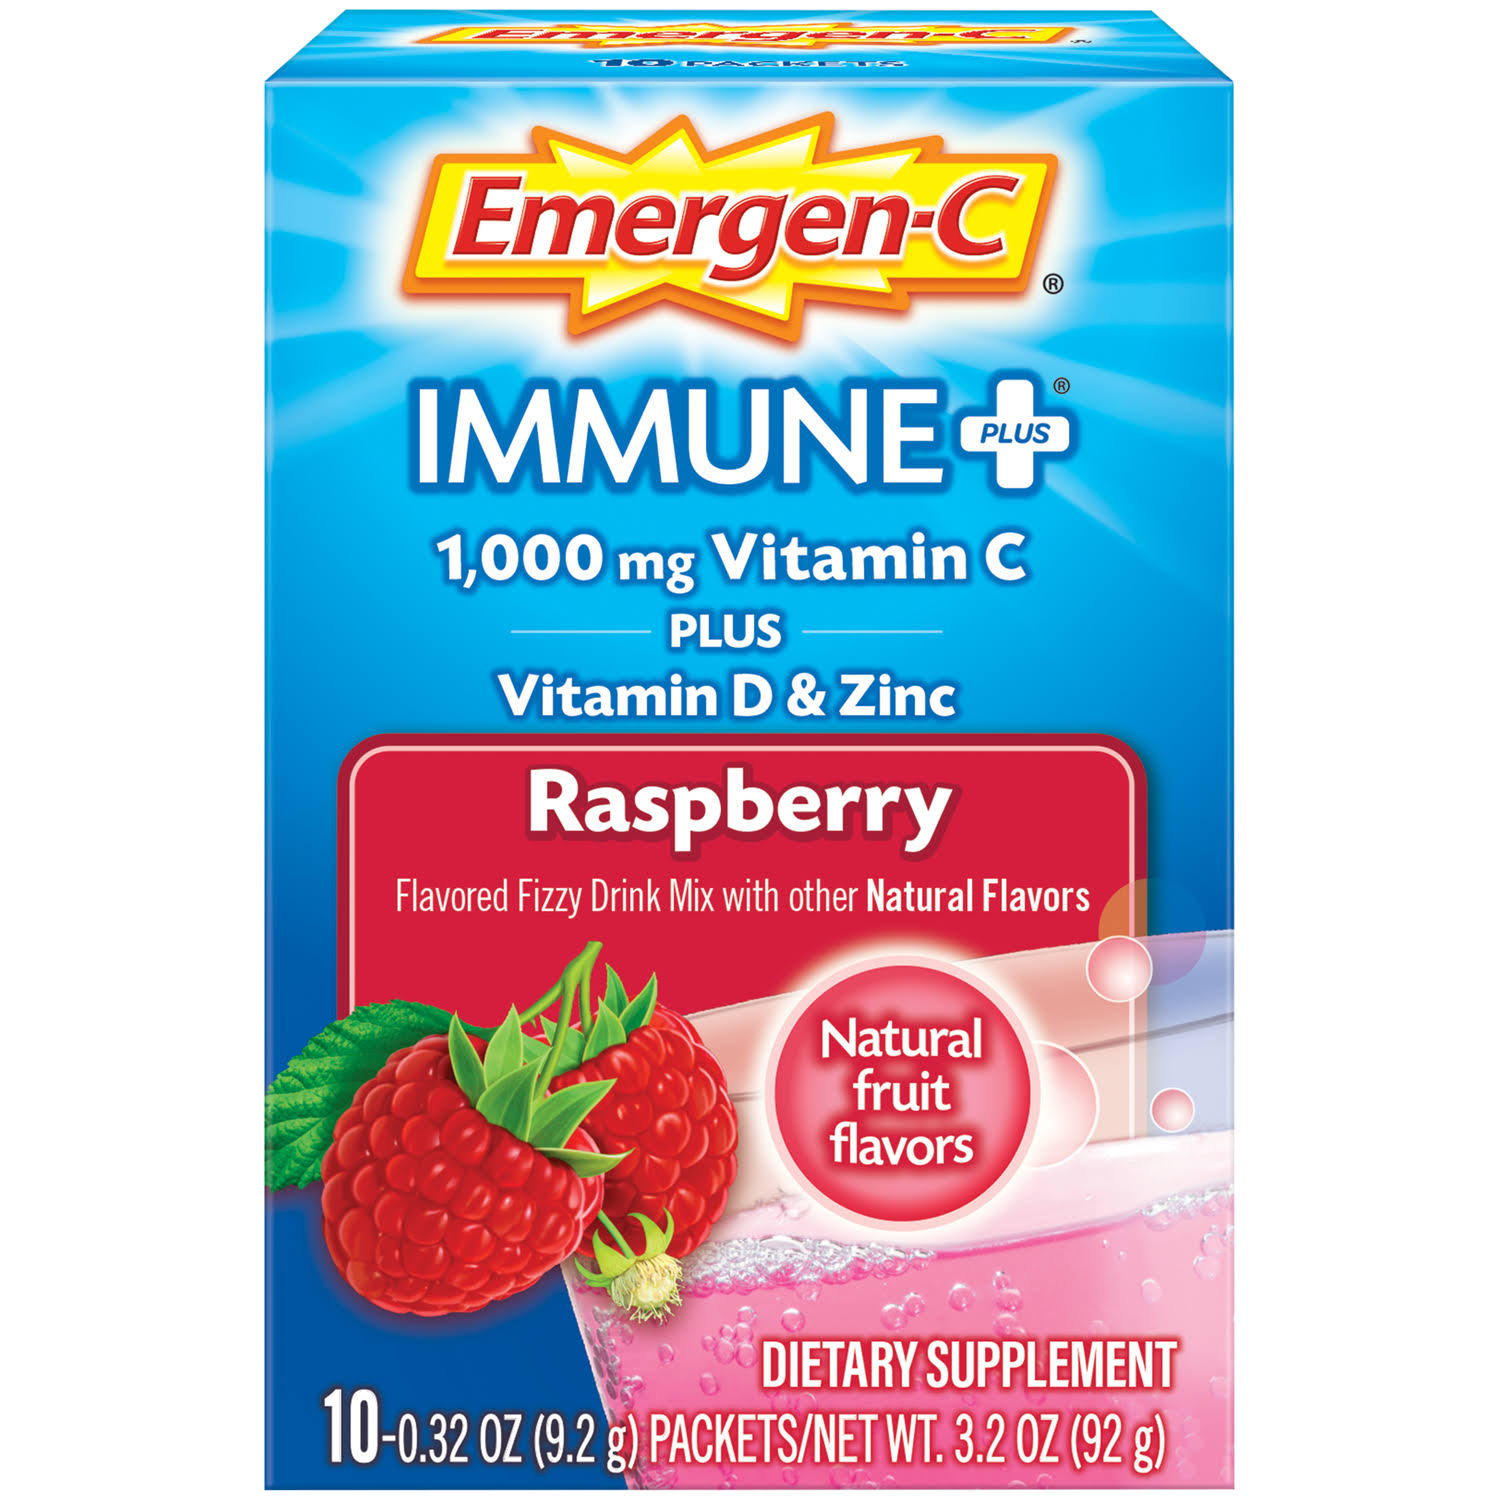 Emergen-C Immune Plus System Support Dietary Supplement - Raspberry, 92g